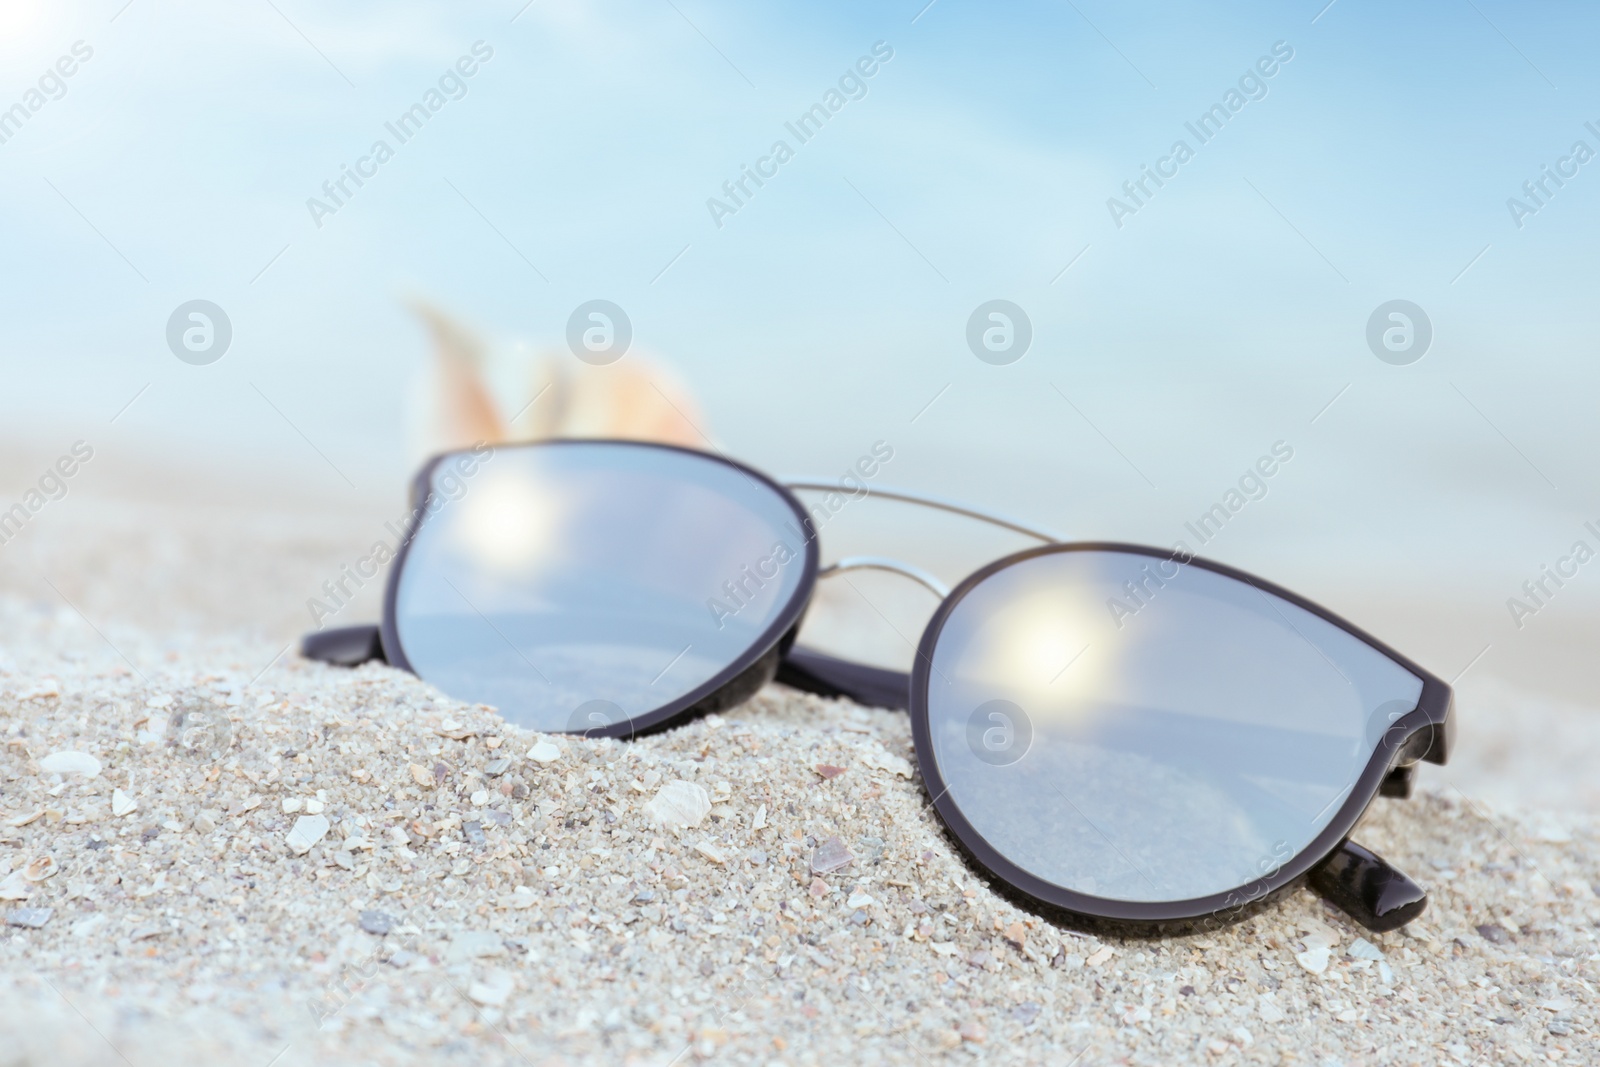 Photo of Stylish sunglasses and shell on sandy beach, closeup